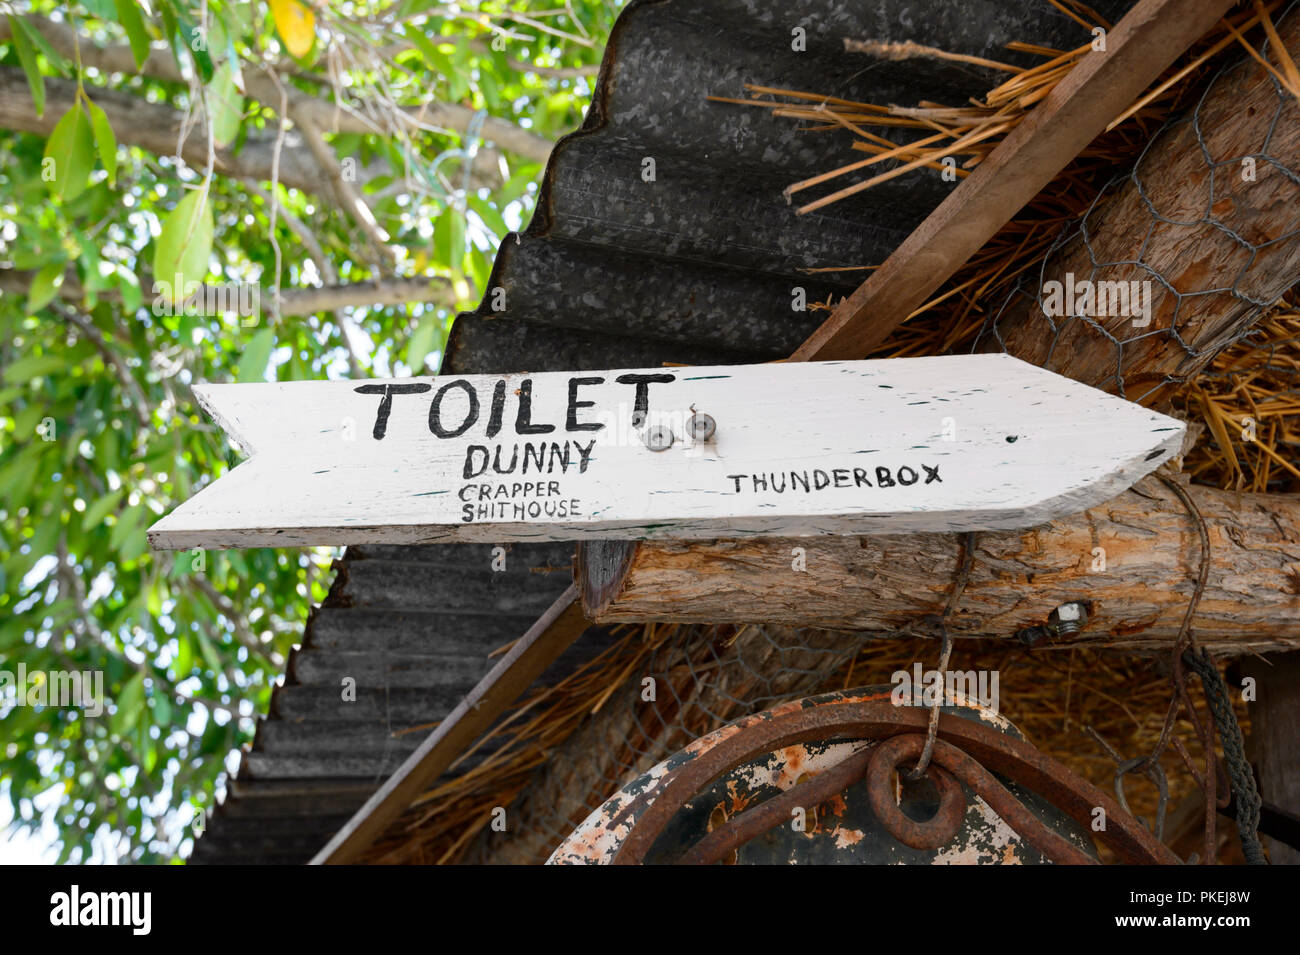 Humorvoll mit verschiedenen Namen für Toiletten, nördlichen Queensland, Queensland, Australien Stockfoto